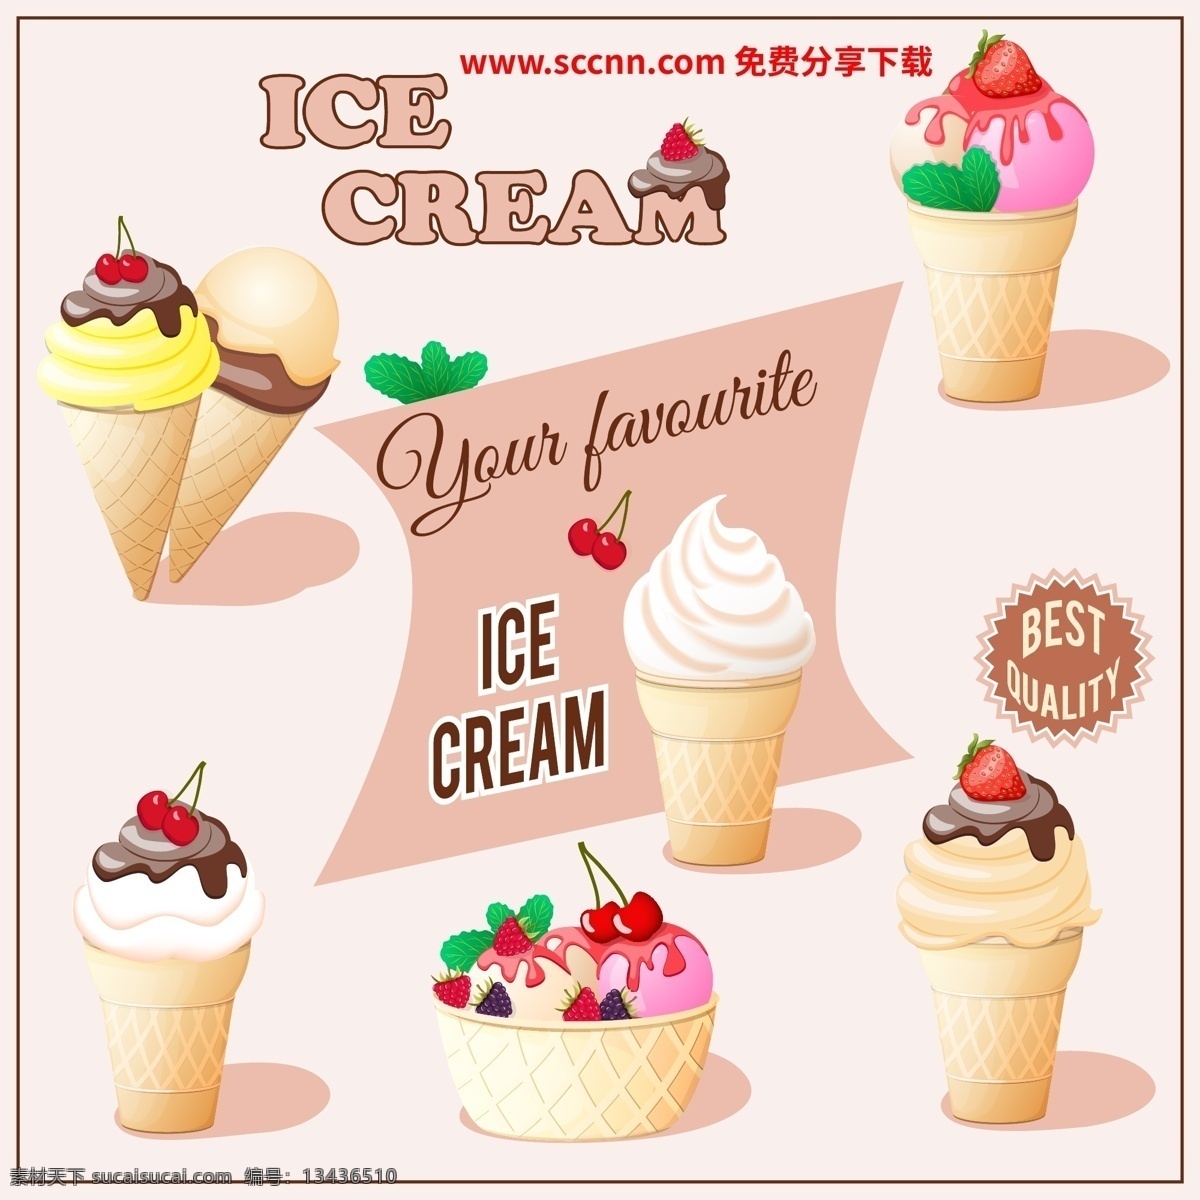 美味 甜筒 冰淇淋 甜筒冰淇淋 水果 生活用品 生活百科 餐饮美食